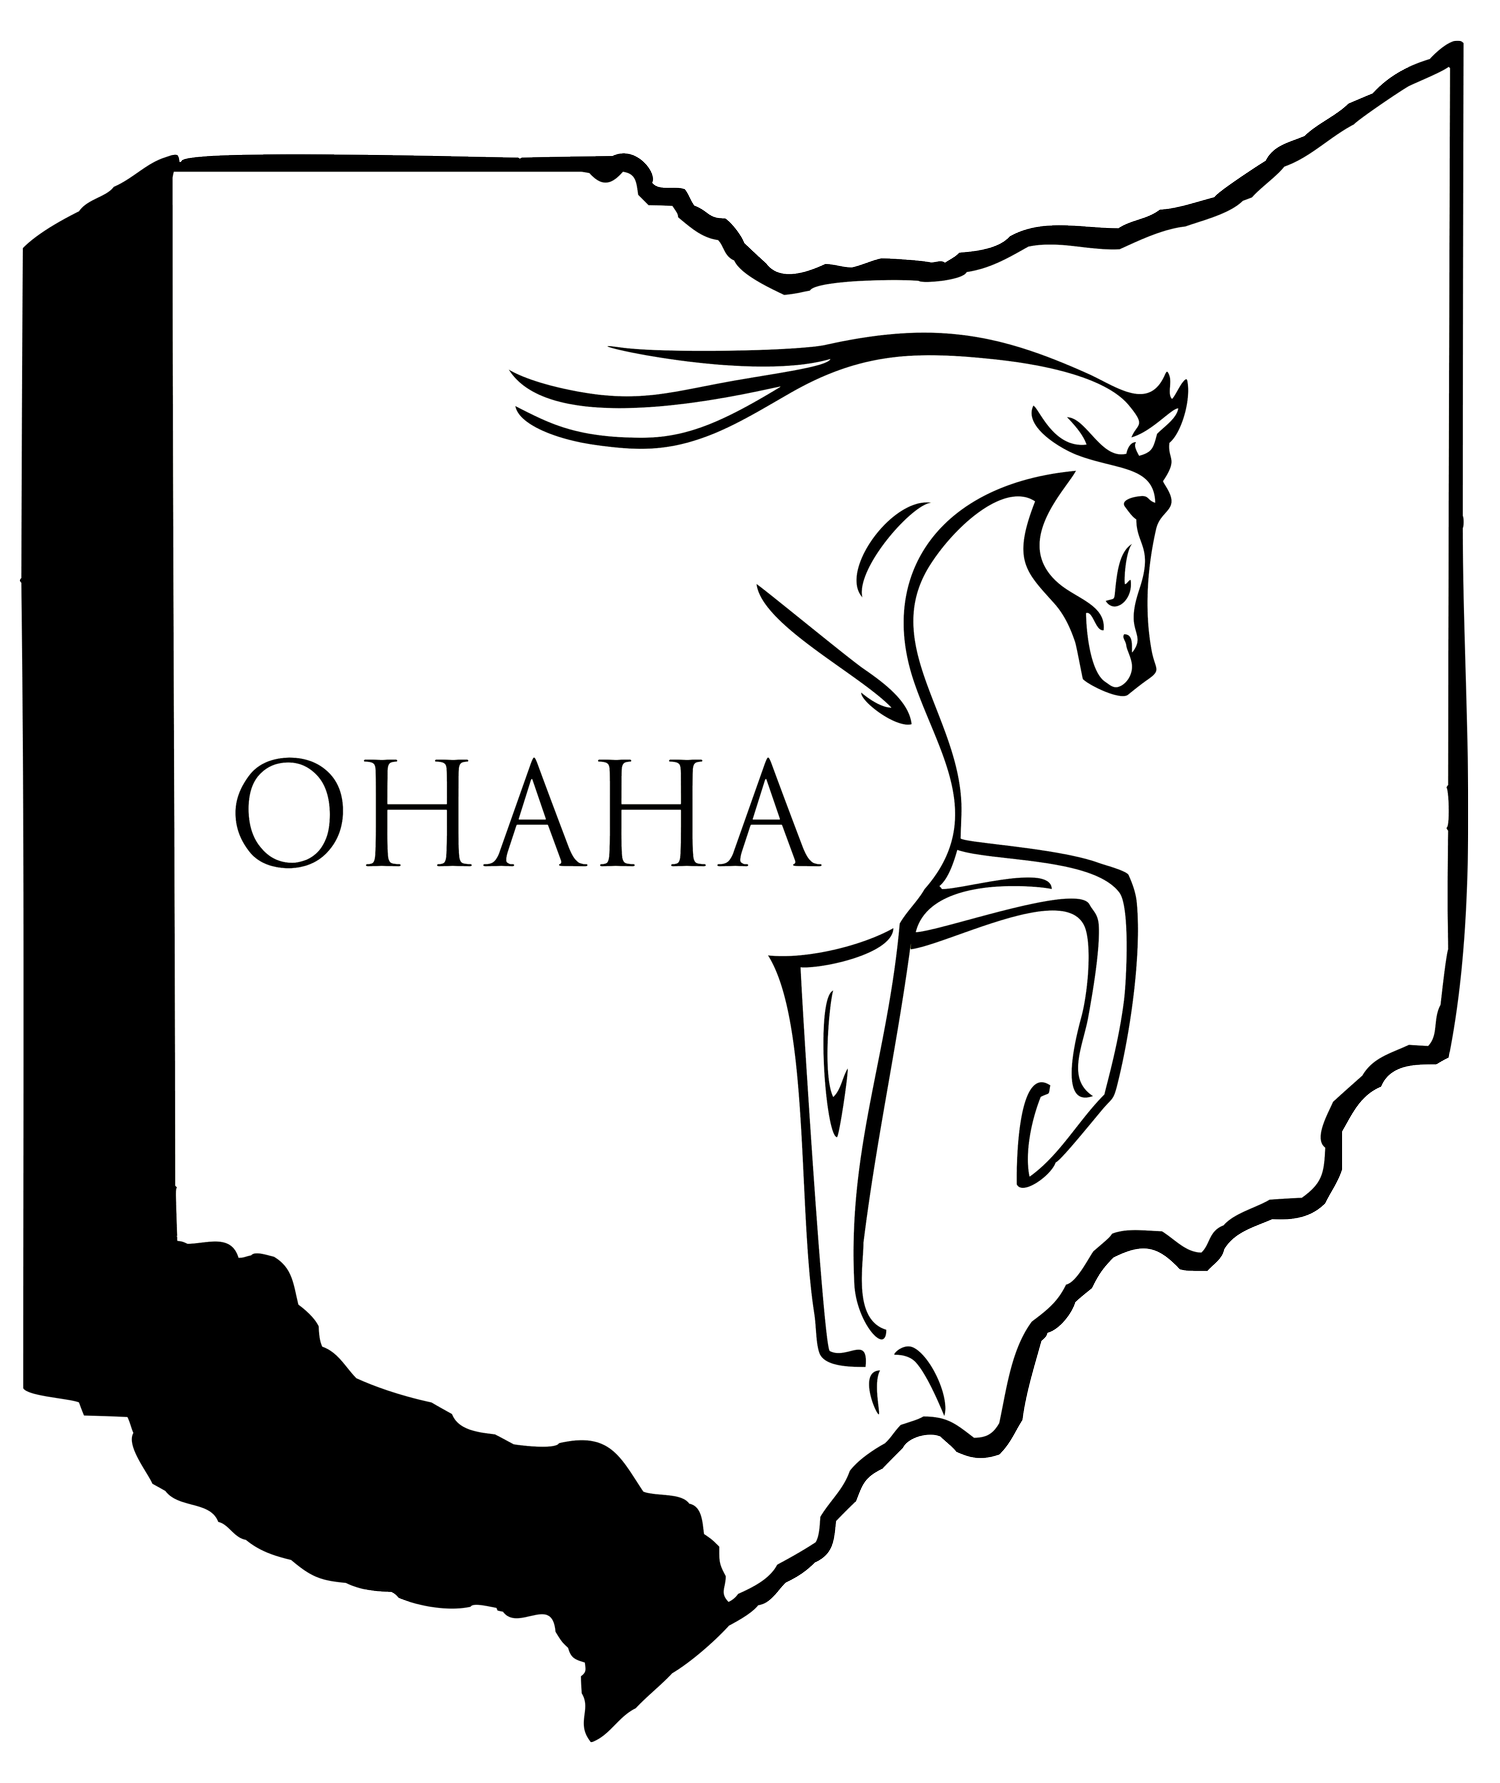 Ohio Arabian Horse Association